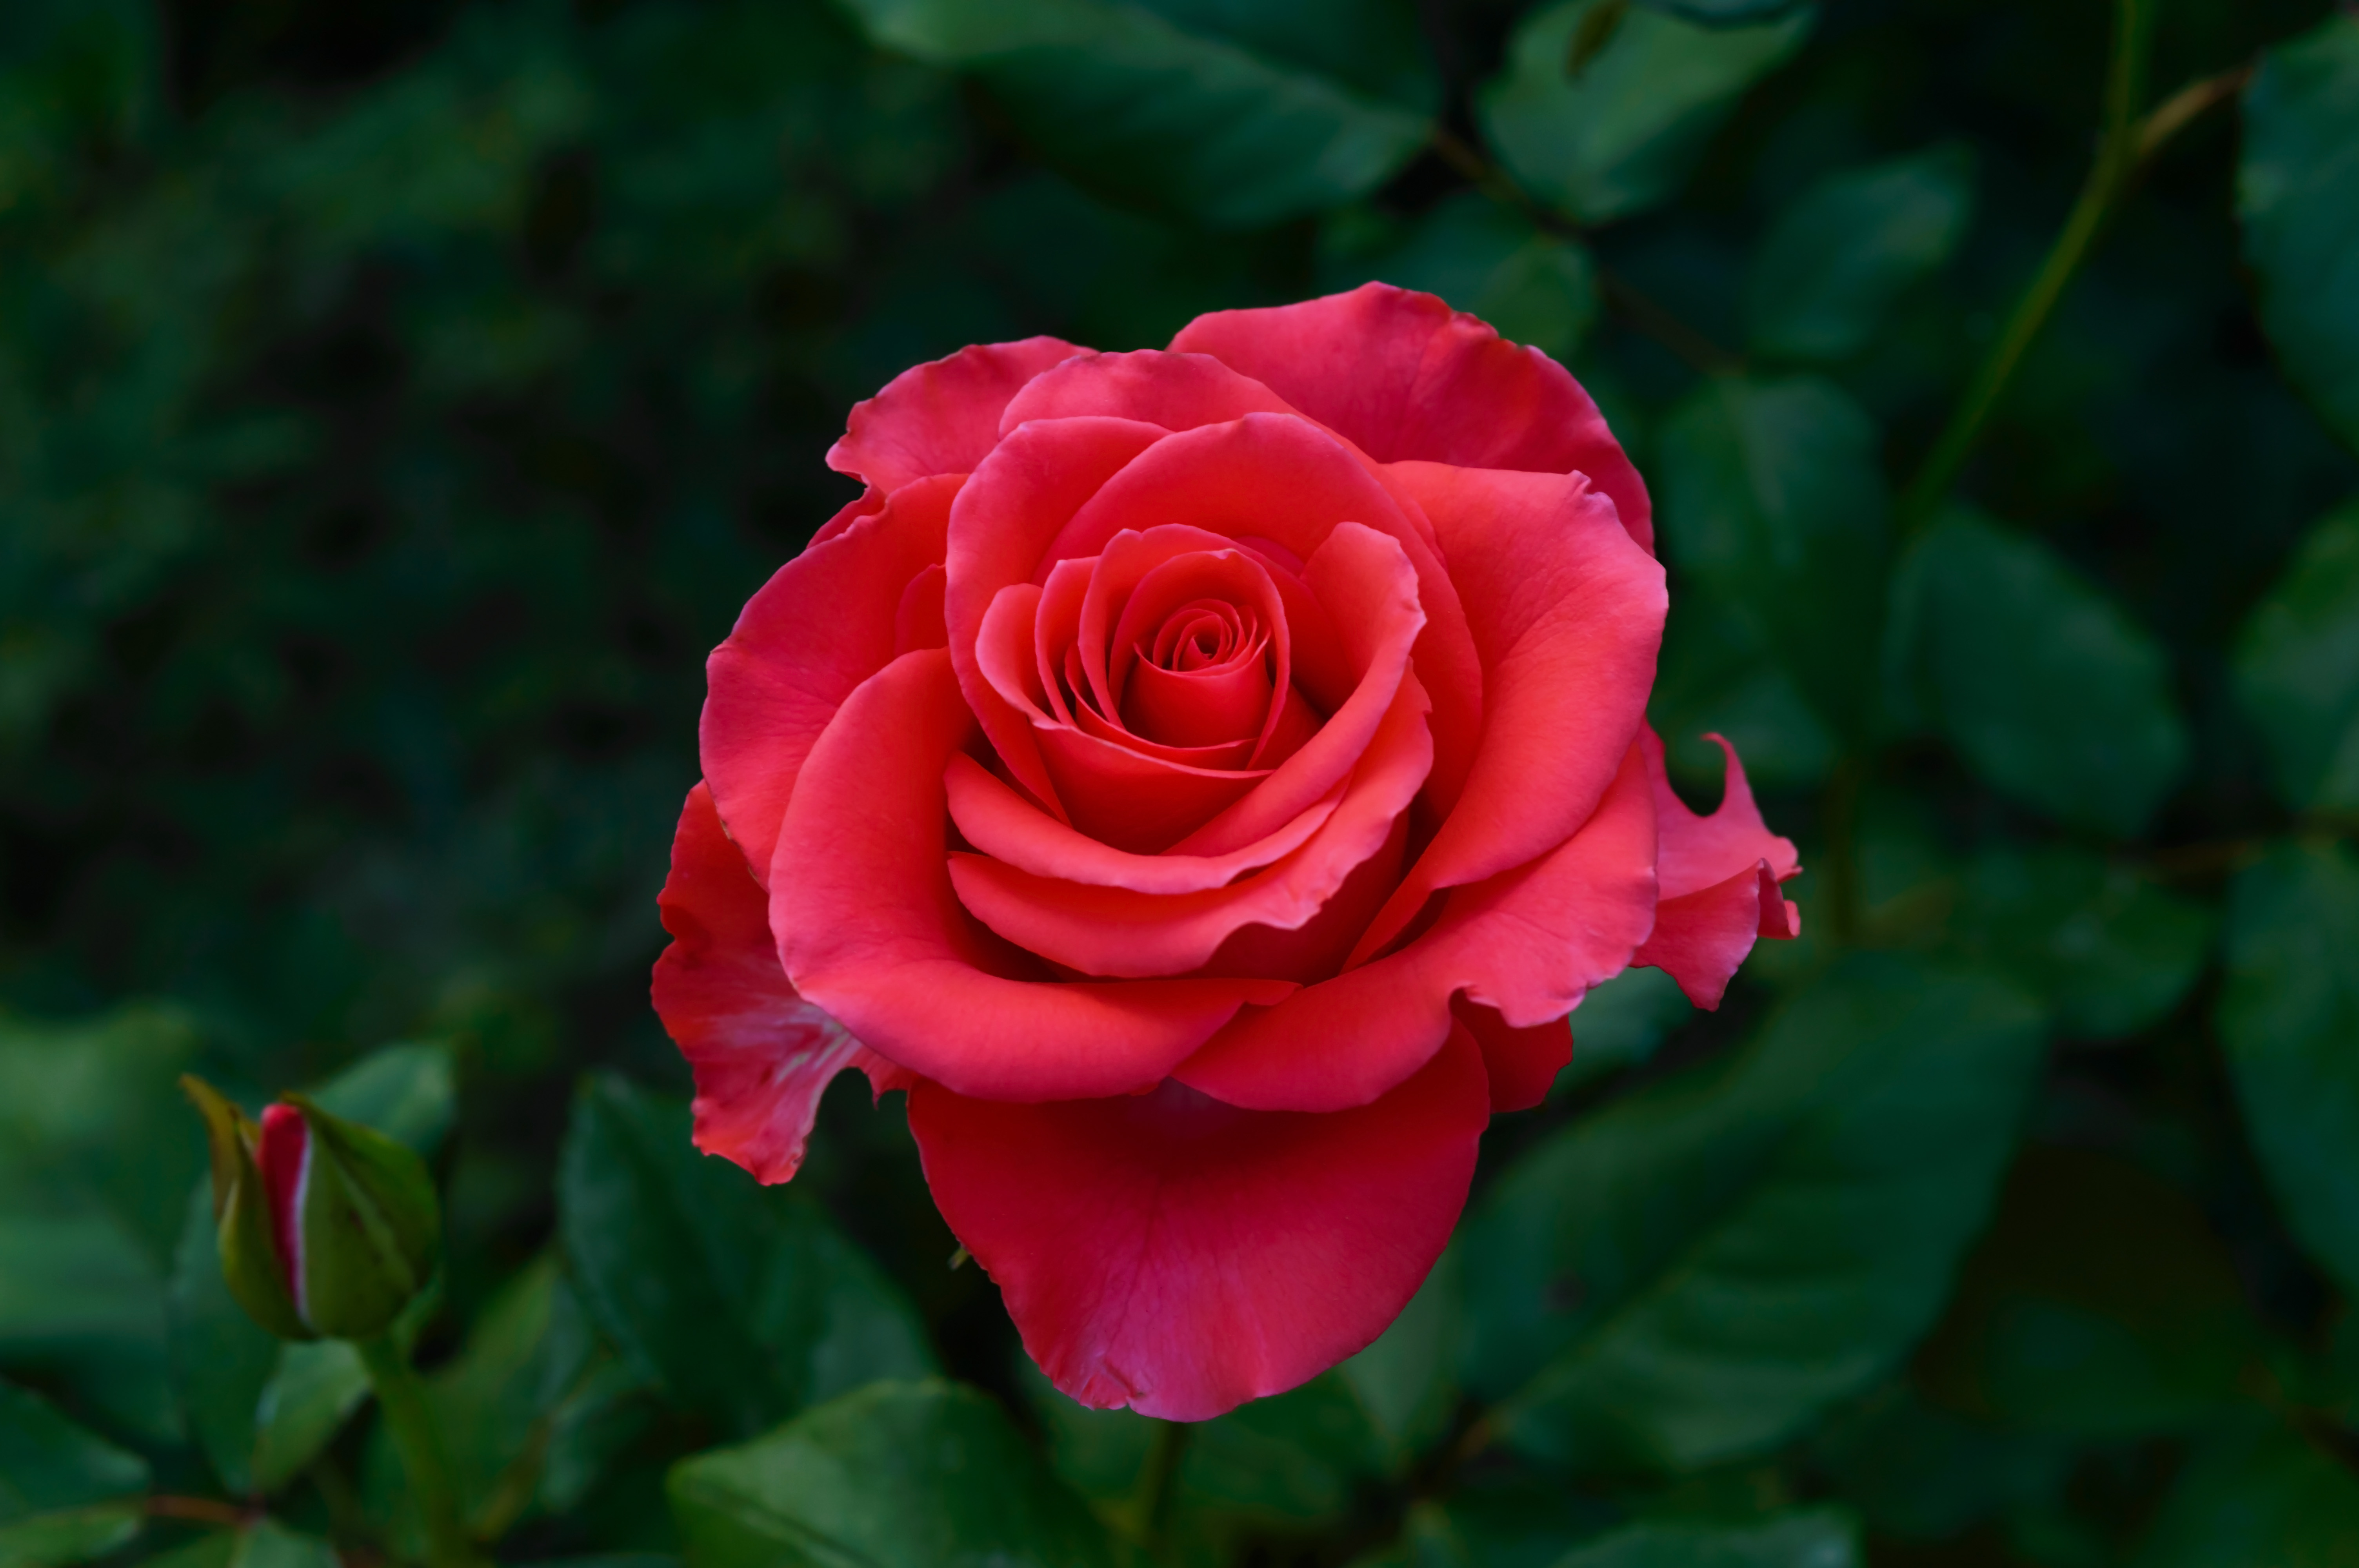 Фото одной розы крупным планом со стебельком